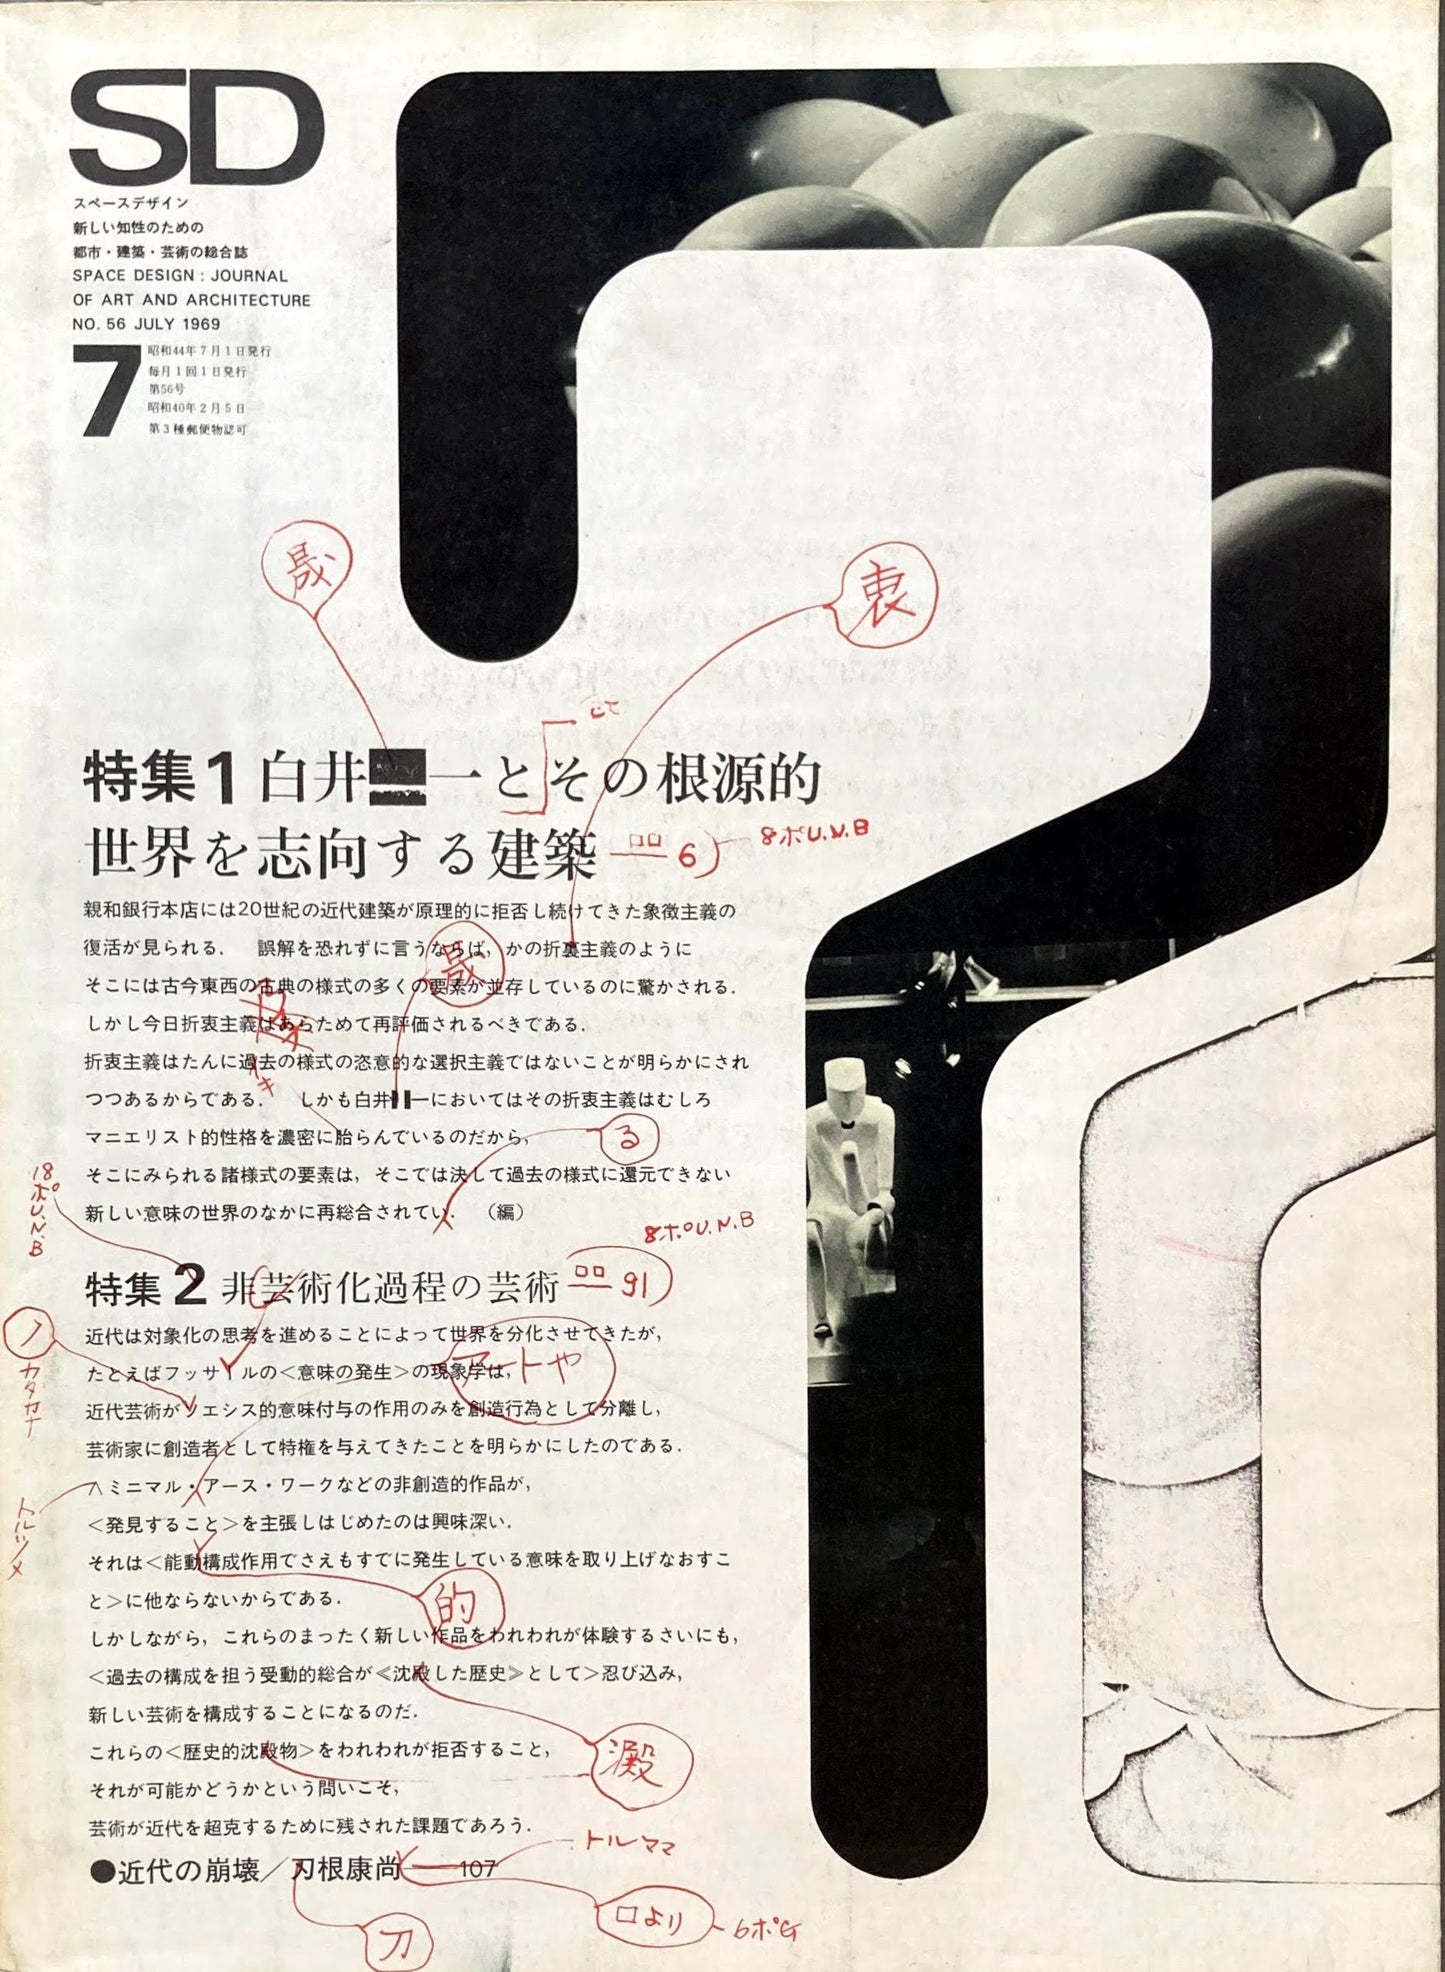 SD　スペースデザイン　1969年7月号　NO.56　白井晟一とその根源的世界を志向する建築